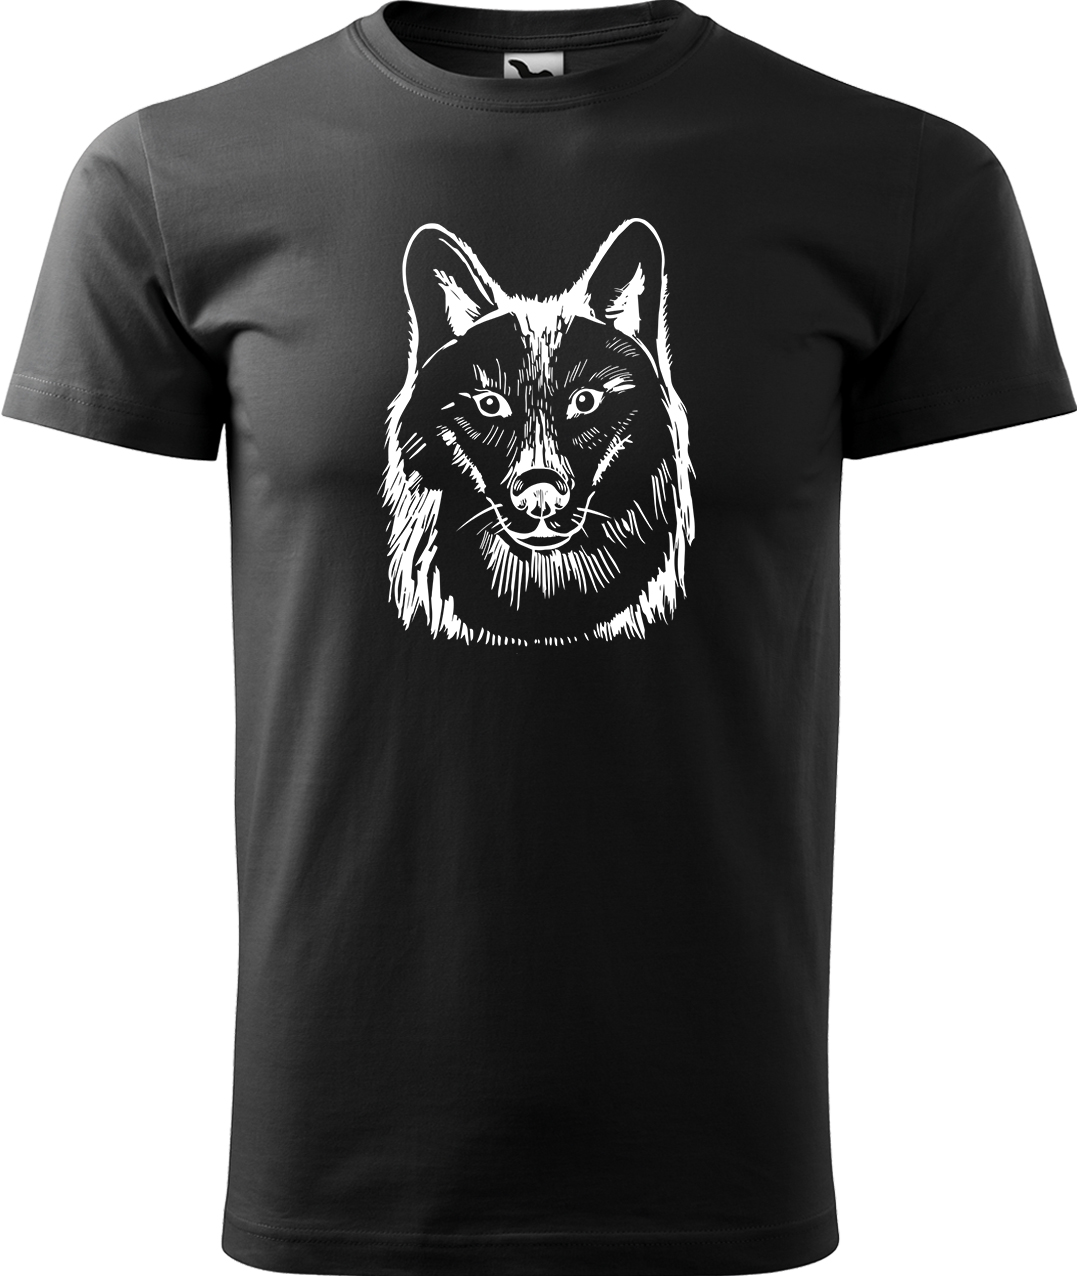 Pánské tričko s vlkem - Kresba vlka Velikost: L, Barva: Černá (01), Střih: pánský